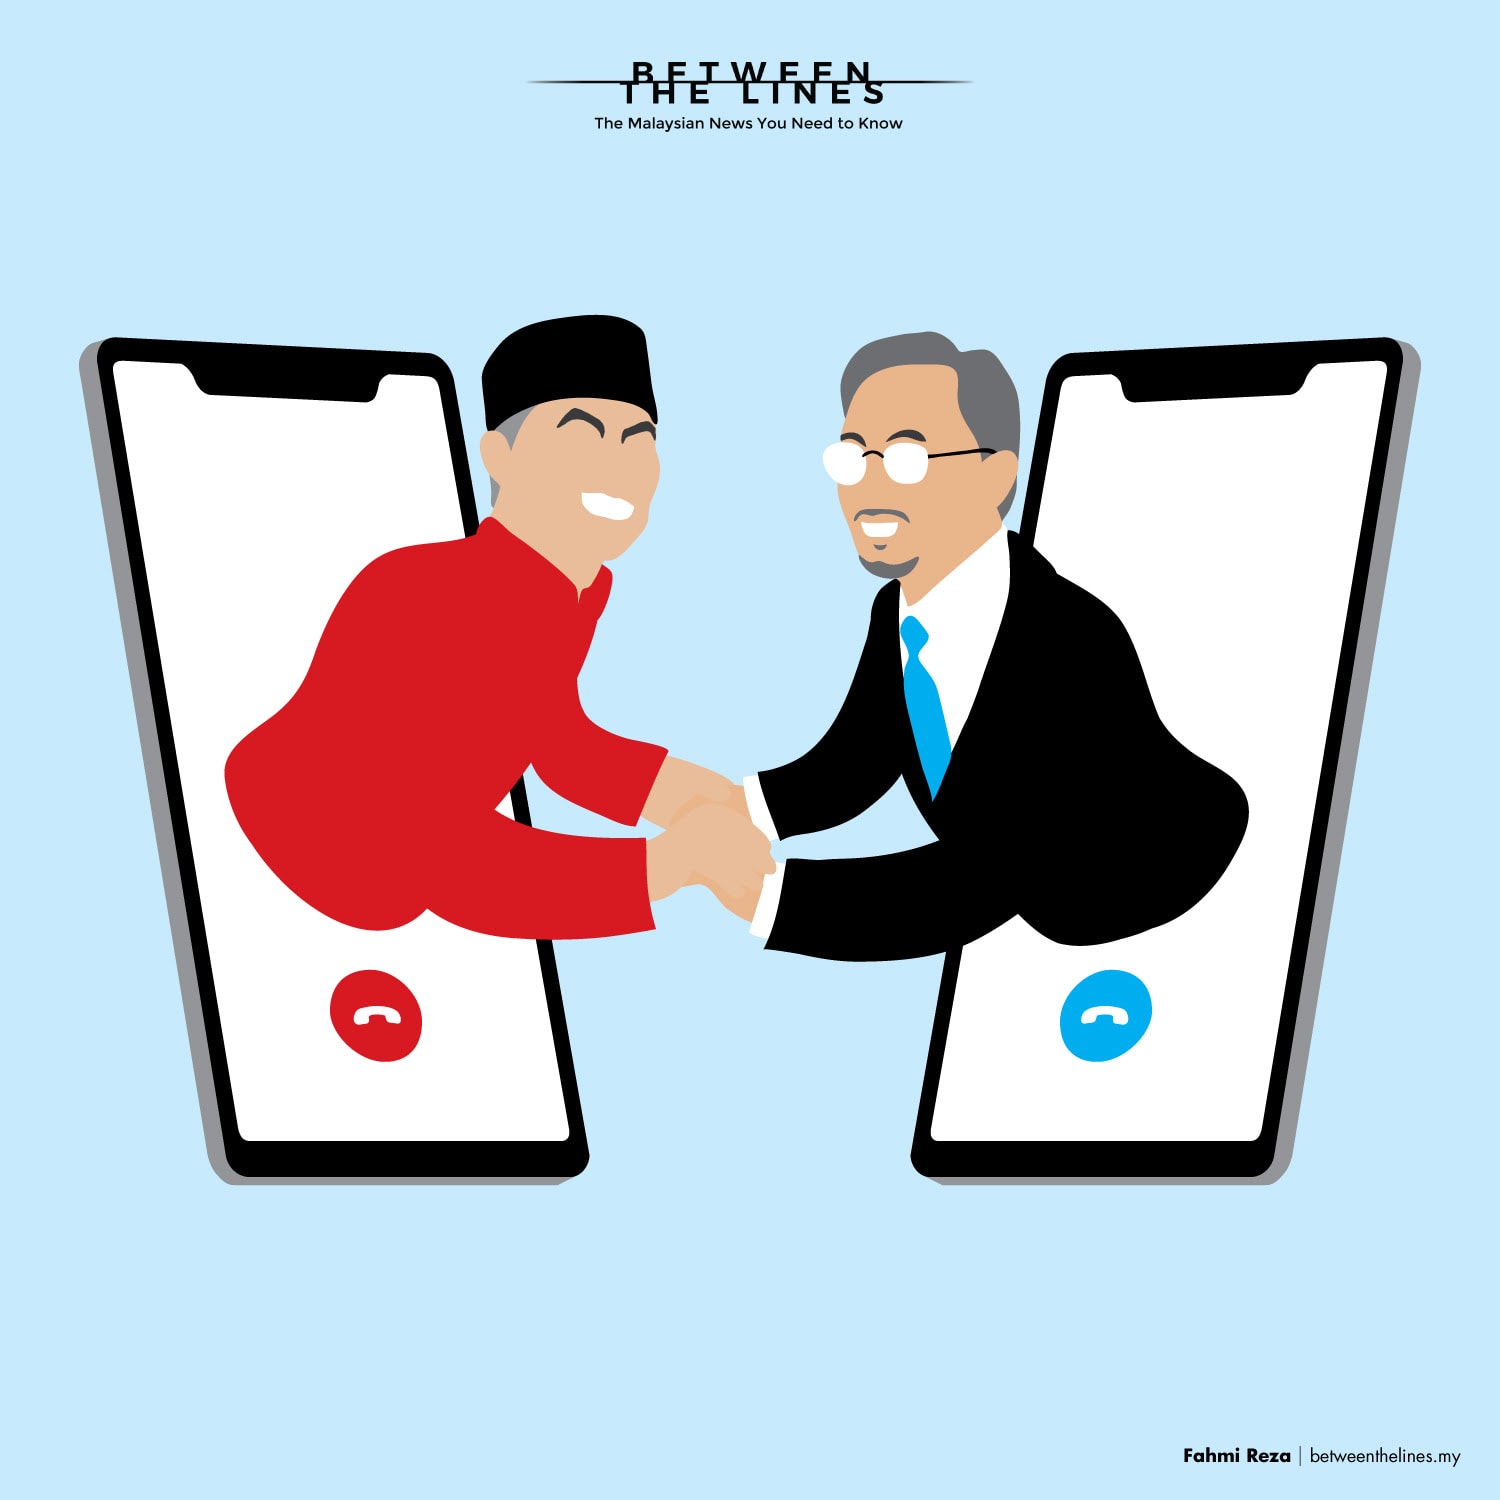 Anwar Ibrahim and Ahmad Zahid Hamidi infamous phone call